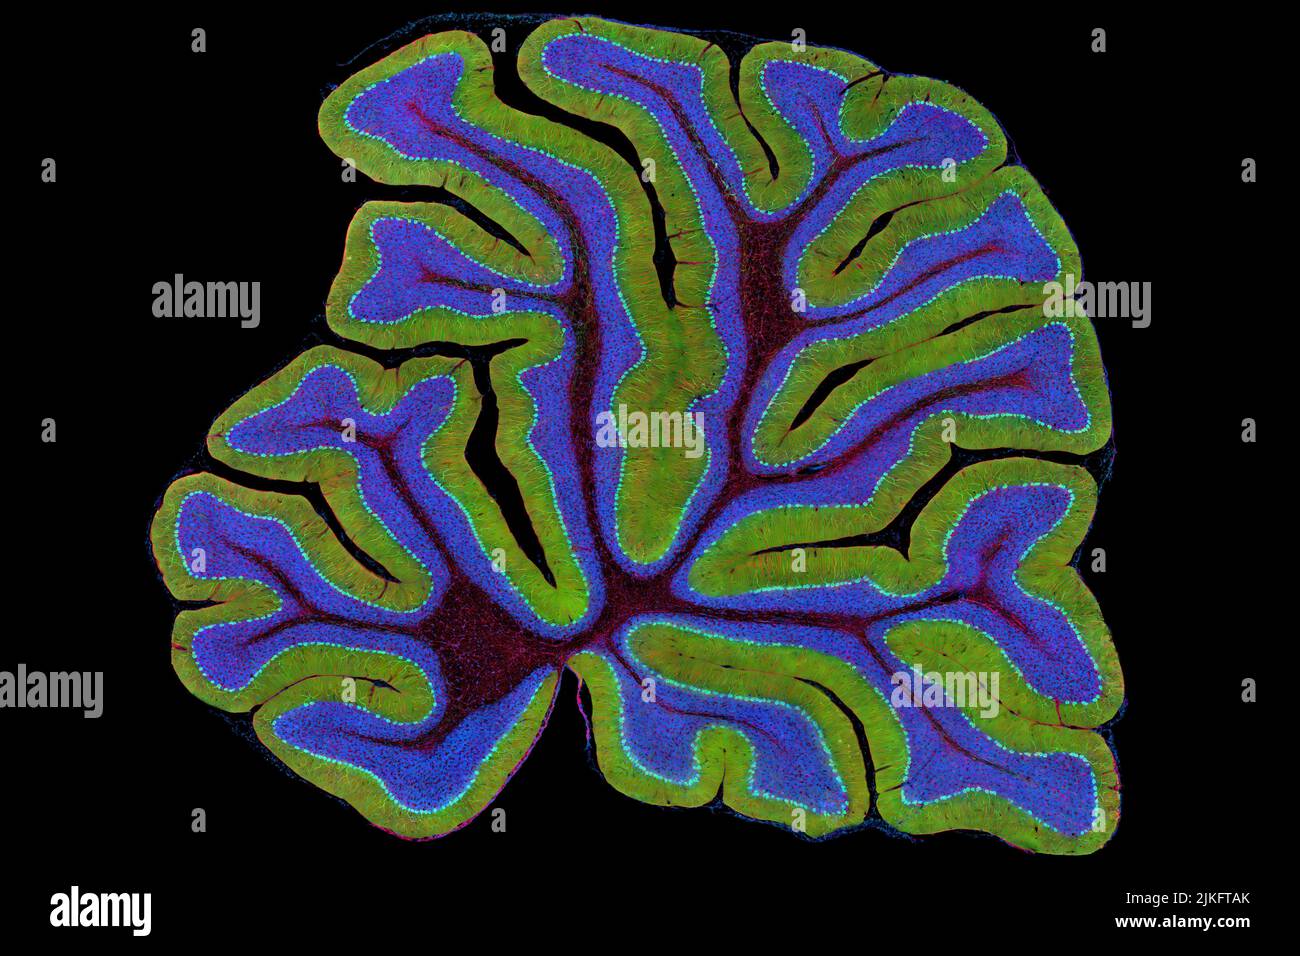 Le cervelet d'une souris est représenté ici en coupe transversale. Le cervelet est le centre de contrôle de la locomotion du cerveau. Chaque fois que vous photographiez un basket-ball, attachez votre chaussure ou hachez un oignon, votre cervelet se transforme en action. Situé à la base de votre cerveau, le cervelet est une seule couche de tissu avec des plis profonds comme un accordéon. Les personnes qui ont des dommages dans cette région du cerveau ont souvent des difficultés avec l'équilibre, la coordination et les compétences motrices fines. Banque D'Images